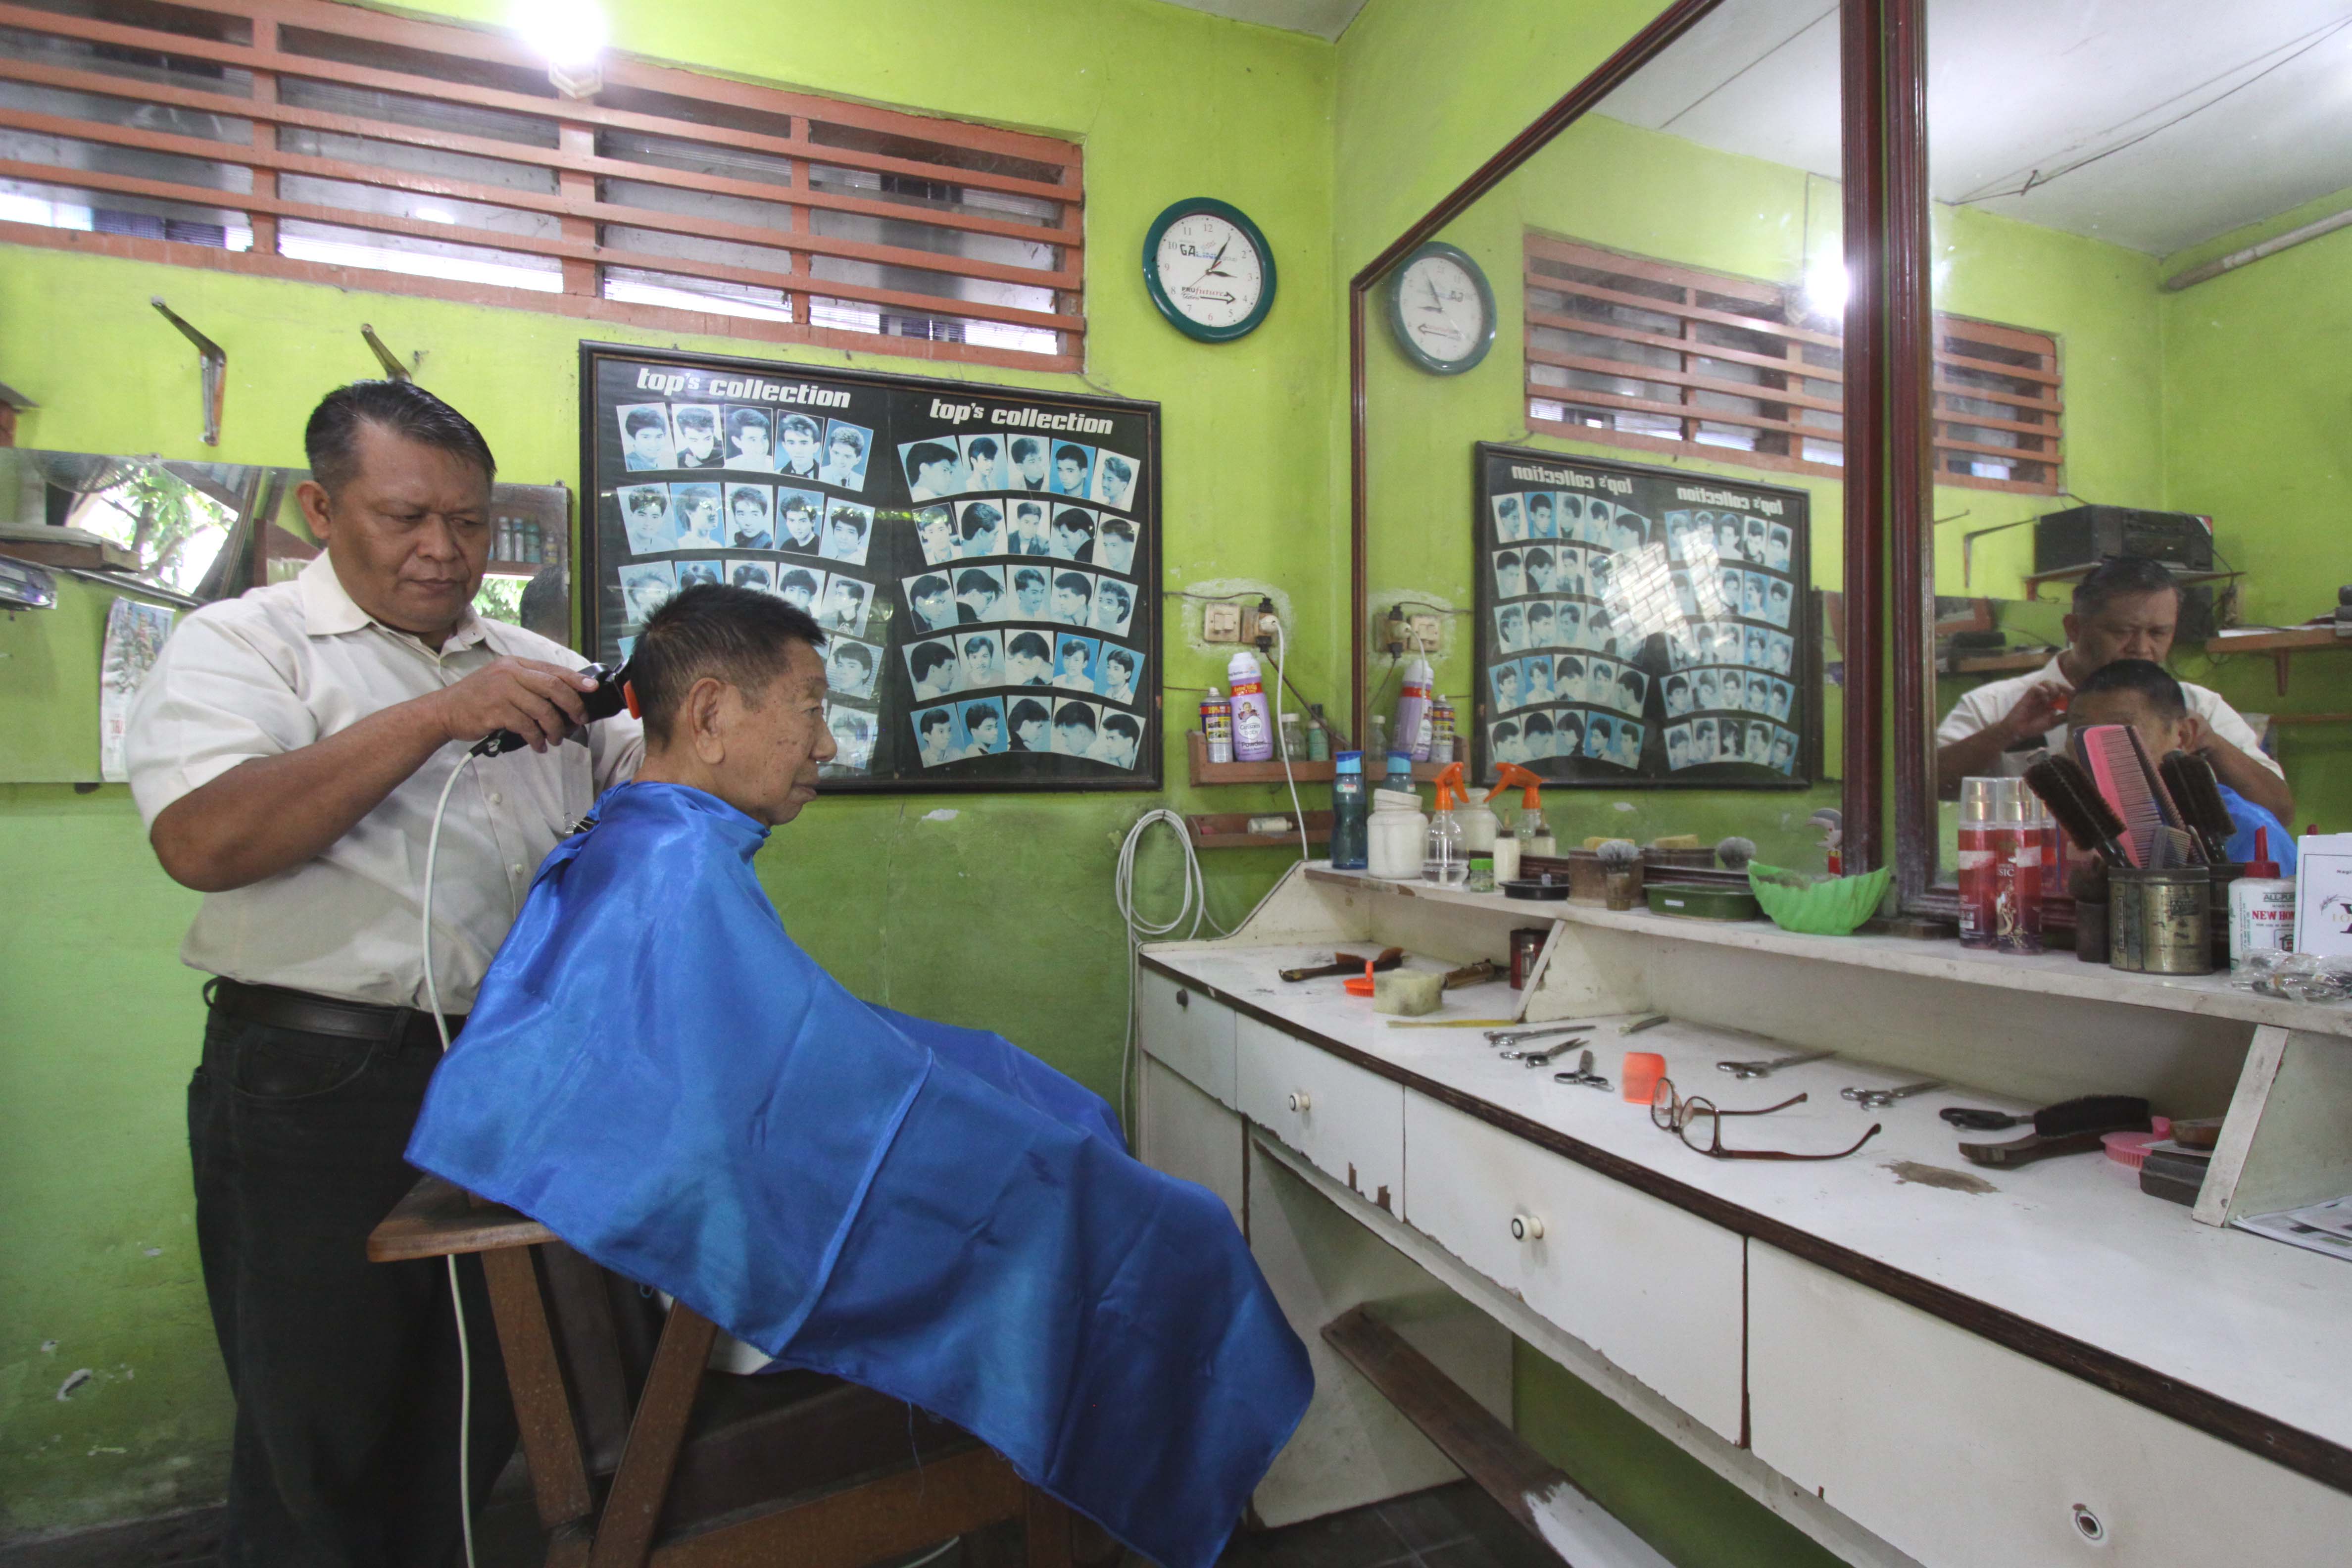 Kisah Tukang Cukur Legendaris di Kota Tegal, Sudah Generasi Ketiga, Jadi Langganan Wali Kota 